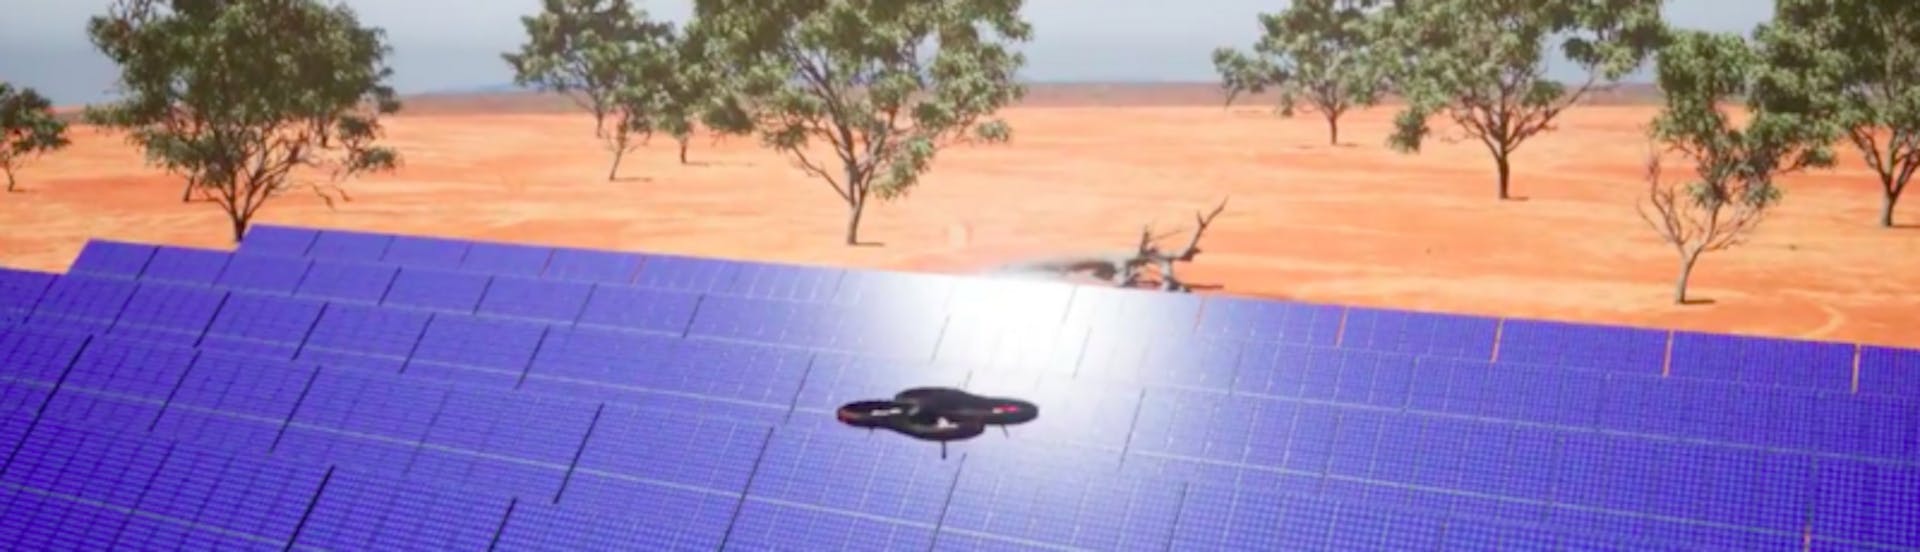 Solar Panel Inspection by Autonomous Drones. Source: ARTIAL MVP video